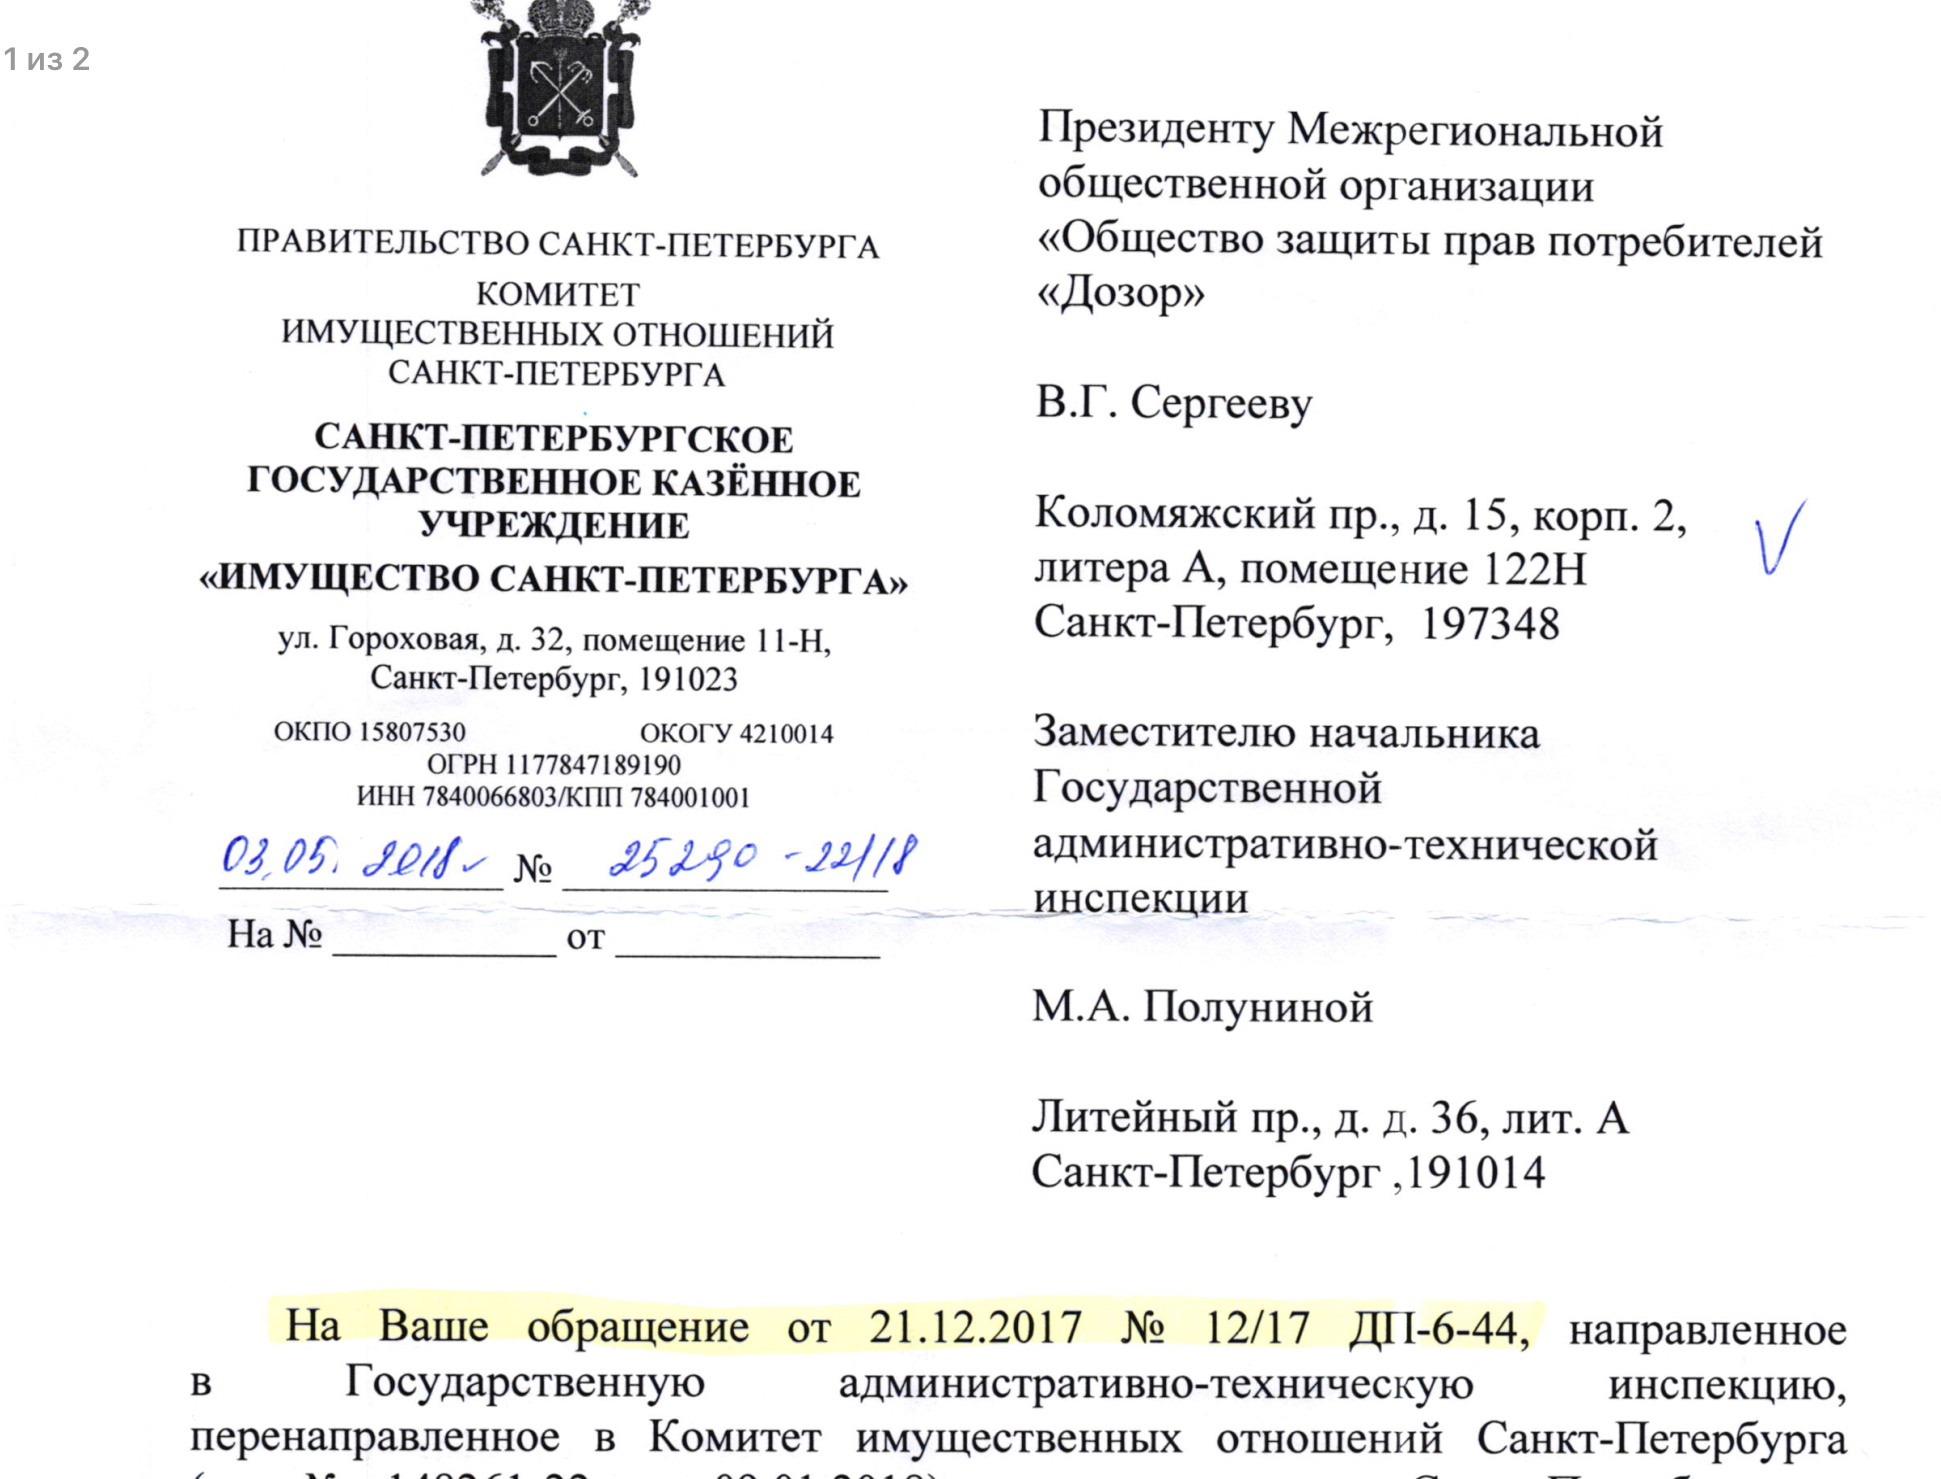 Ответ ГКУ «Имущество Санкт-Петербурга» на обращение по вопросу проведения проверки и принятию мер в отношении арендаторов земельного участков по адресам Испытателей 31 и Испытателей 51.